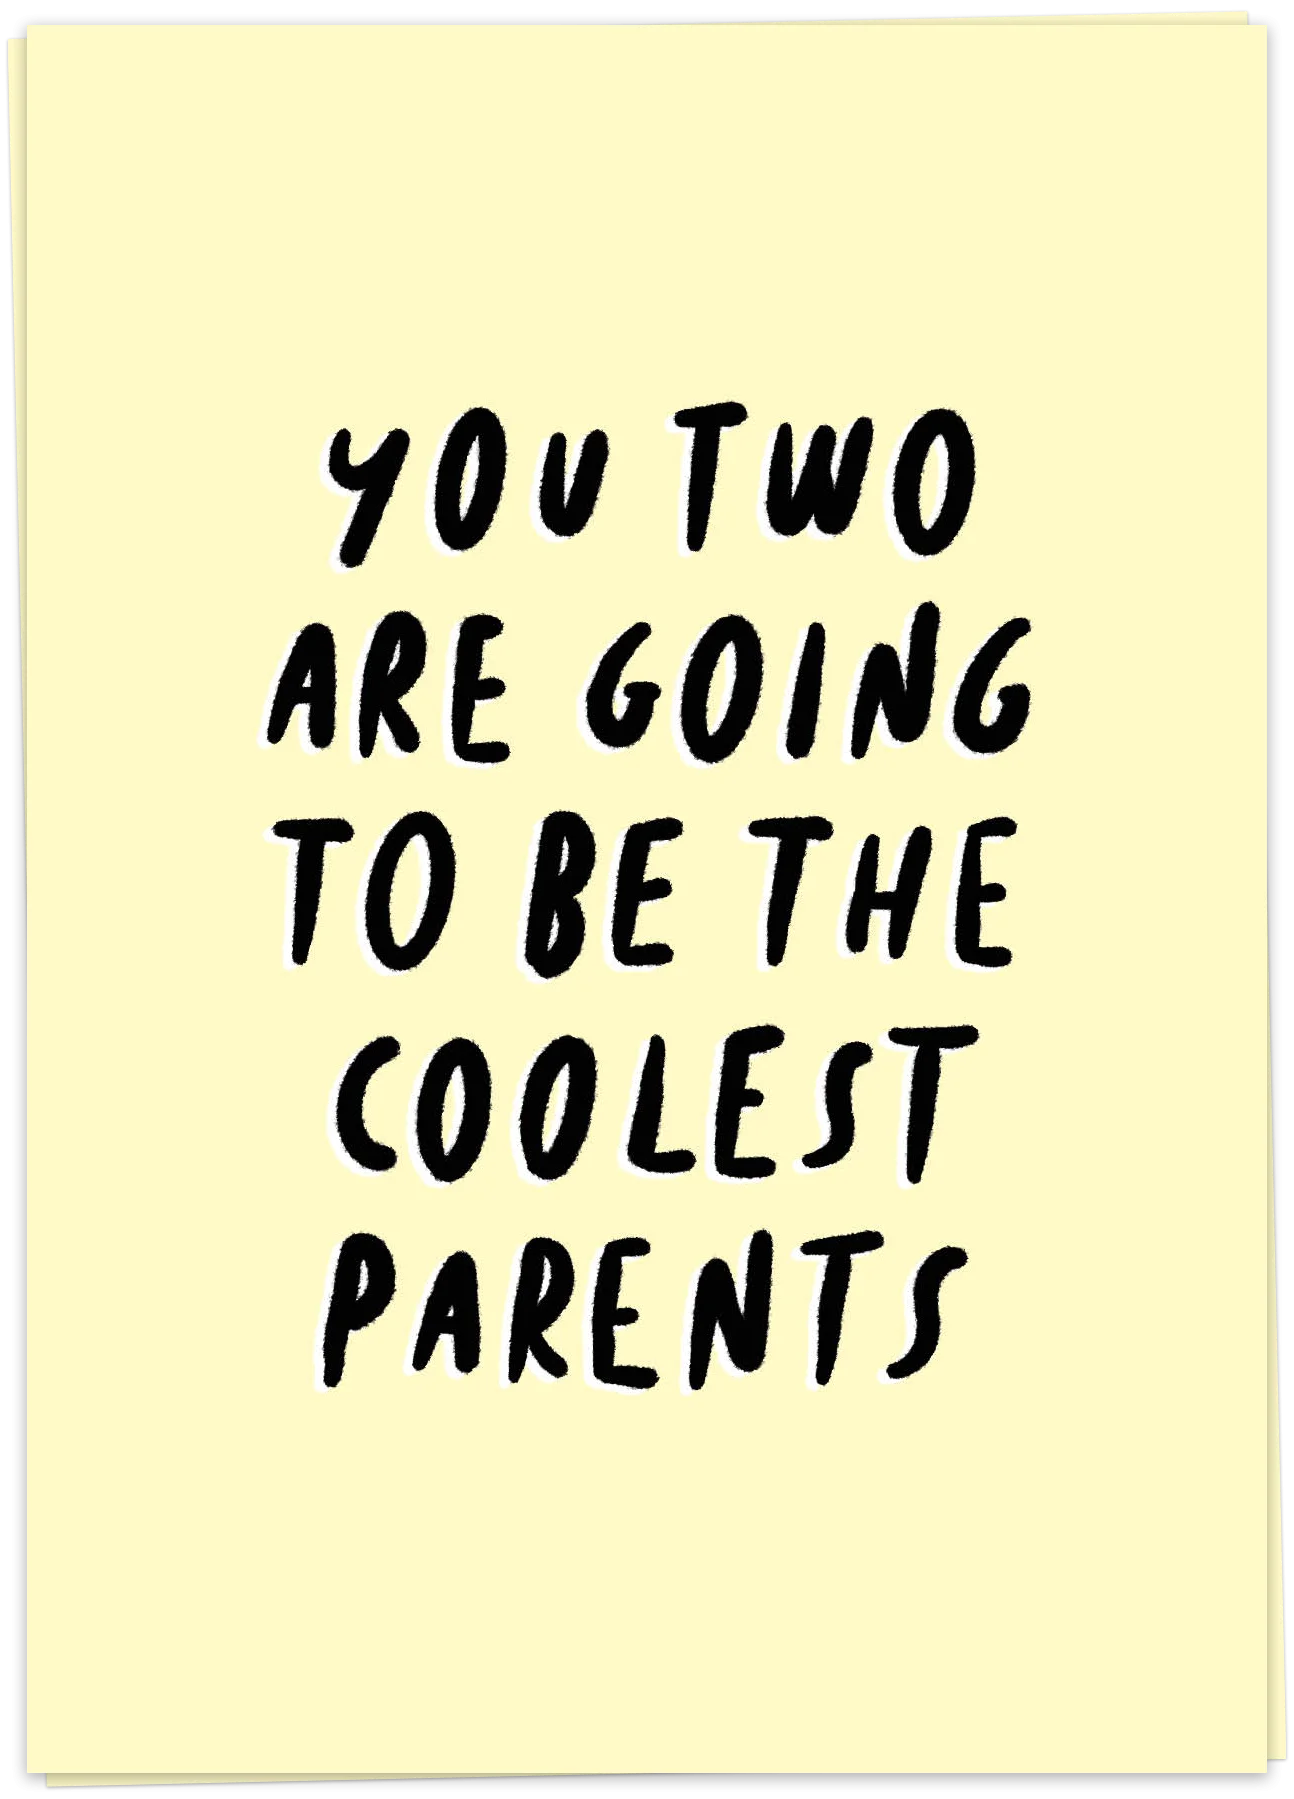 Coolest parents, Parents